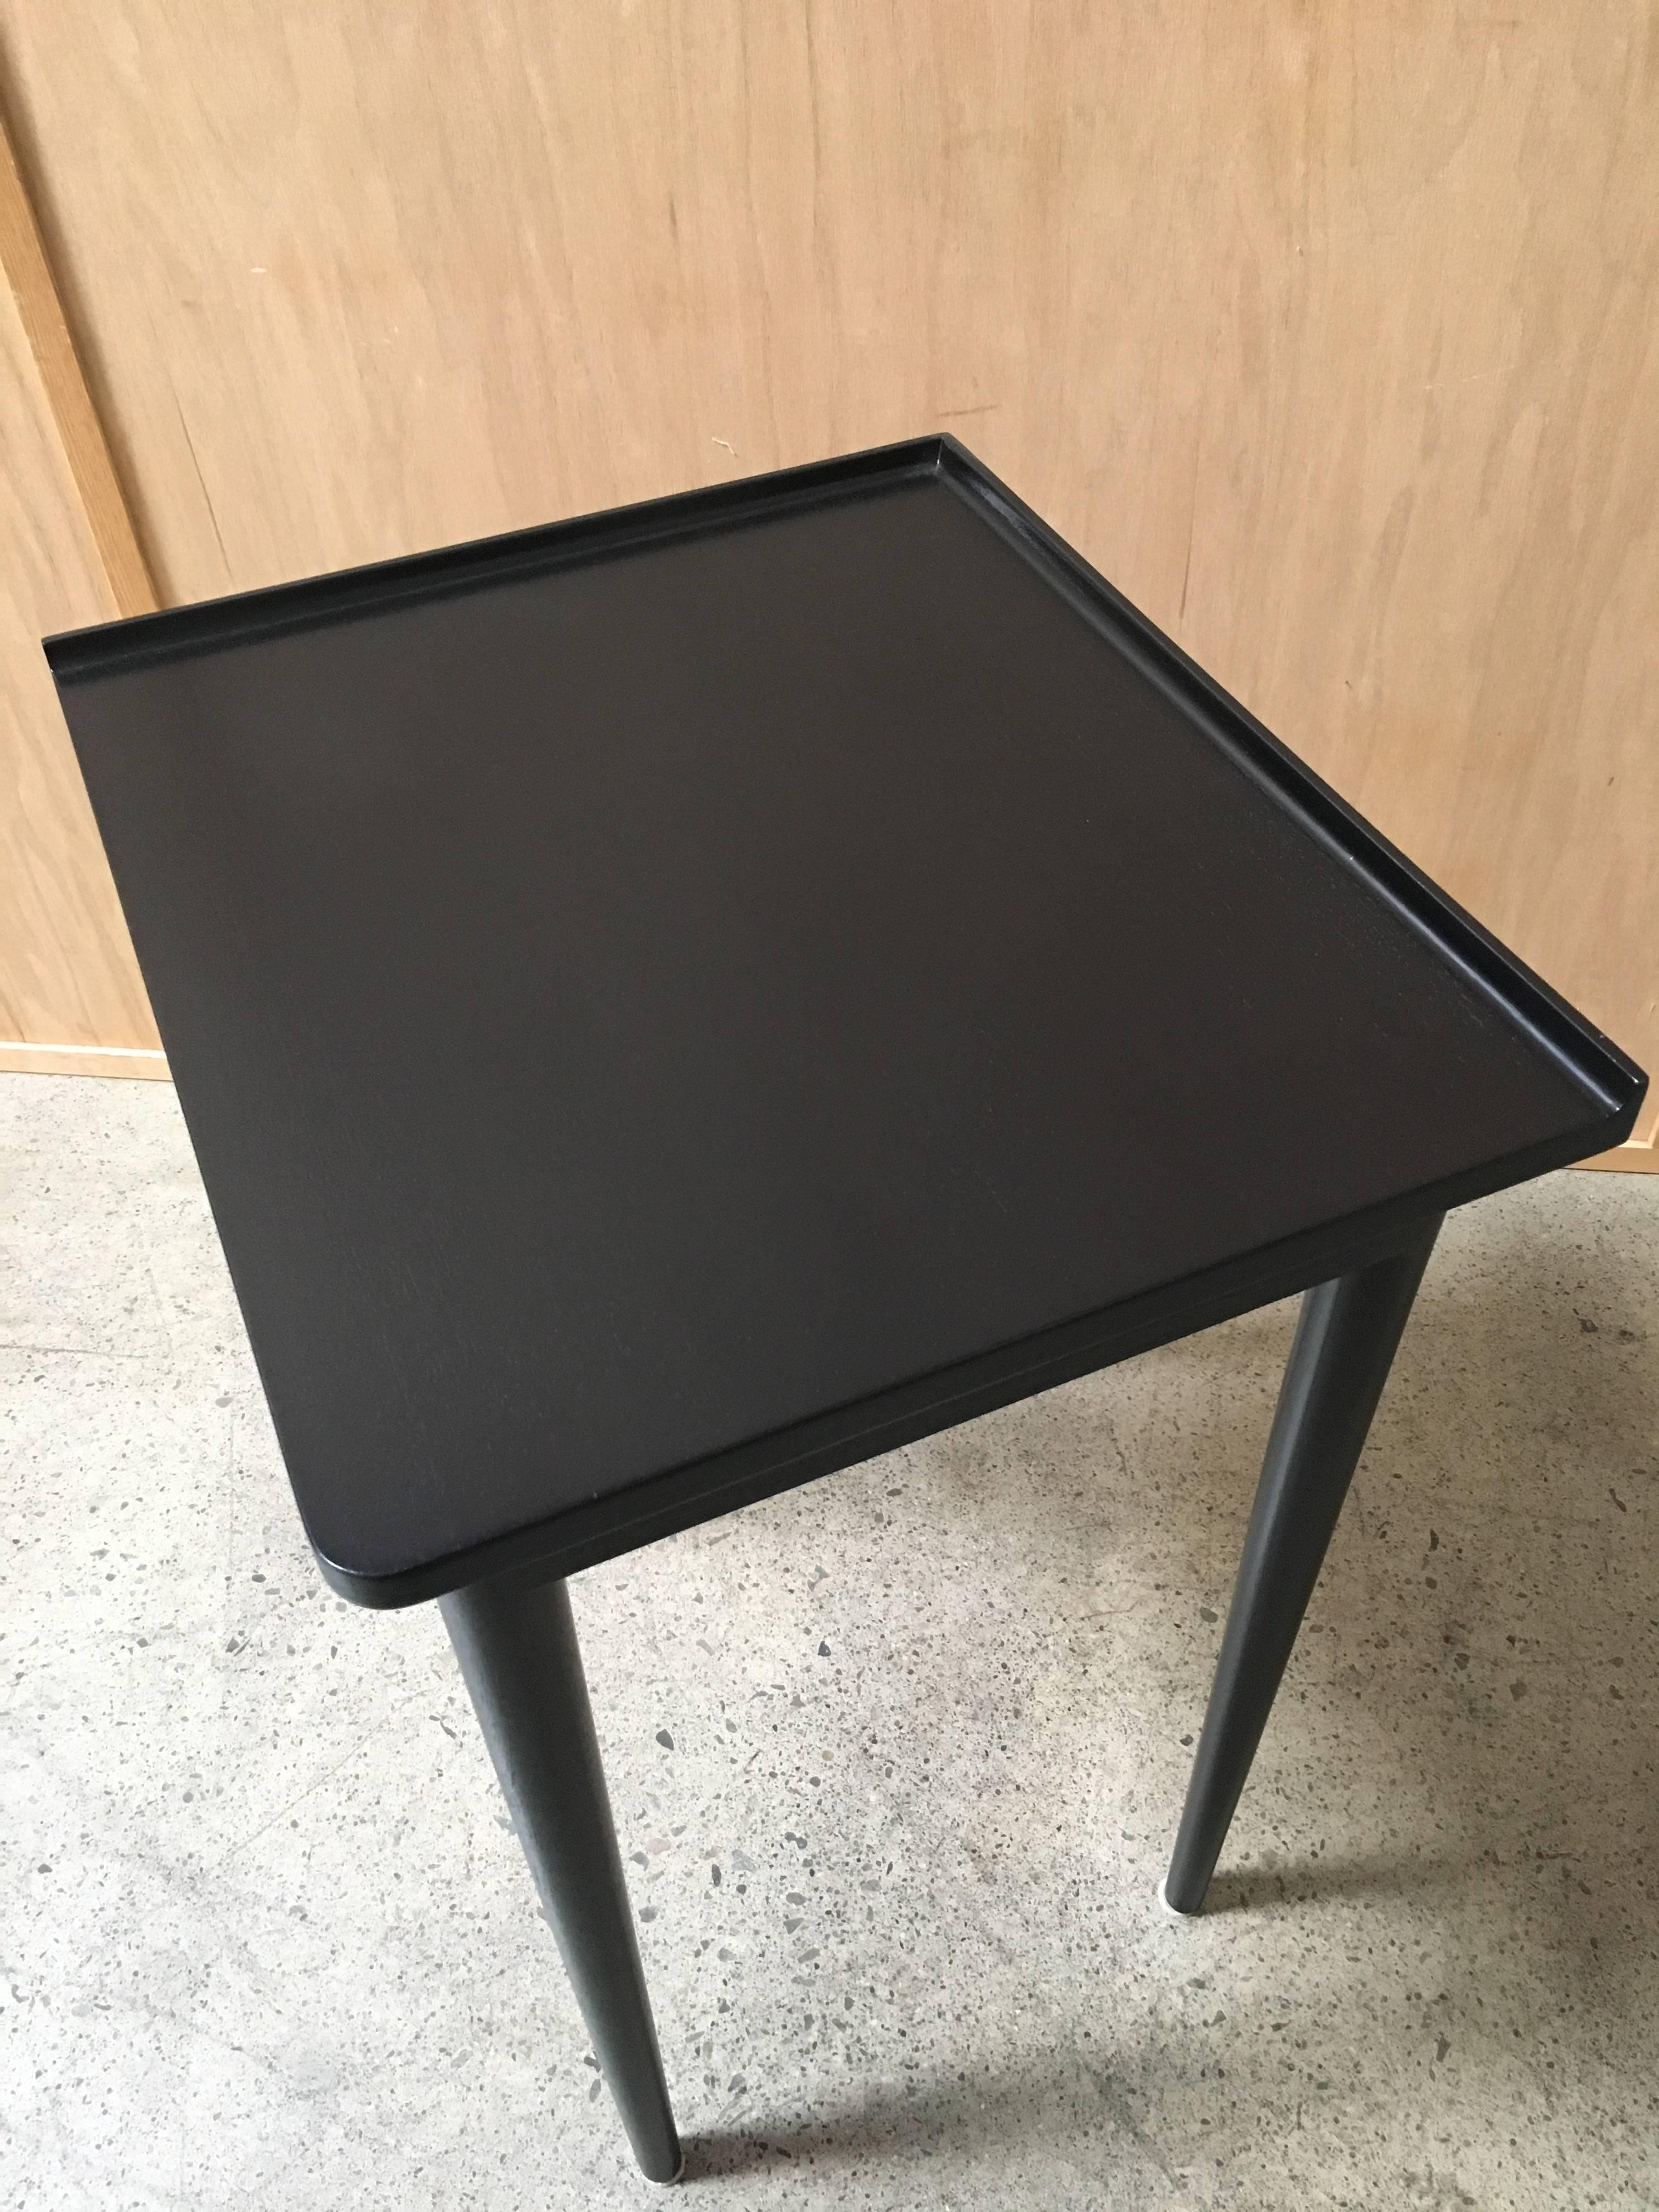 Custom Dunbar ebonized corner table by Edward Wormley.